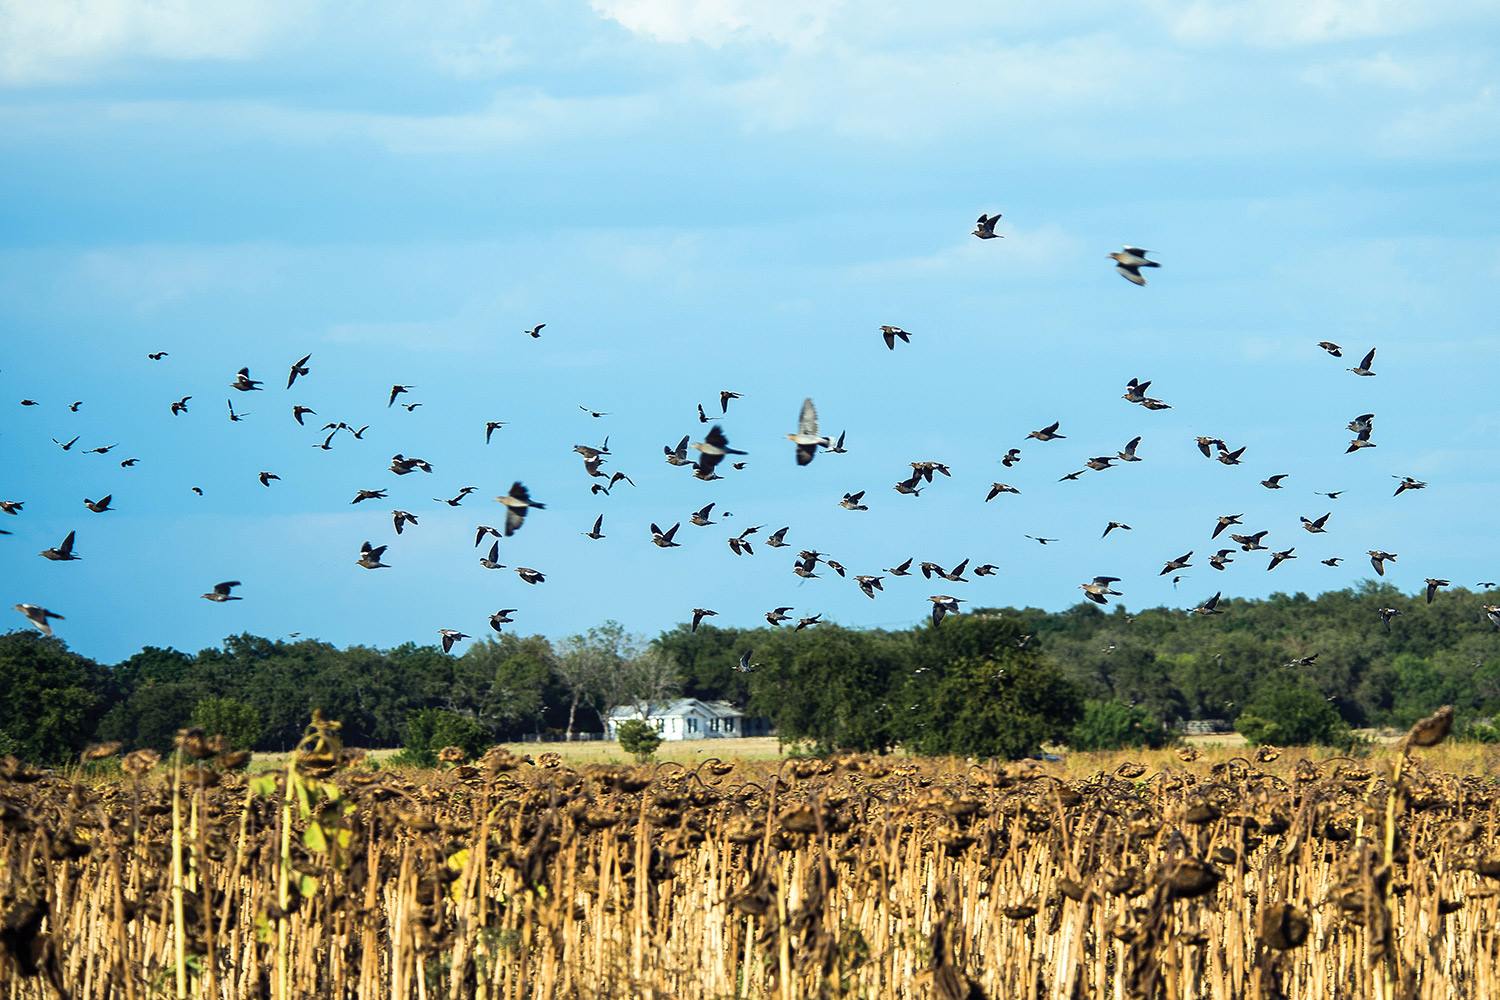 doves fly across blue sky over dead sunflower field